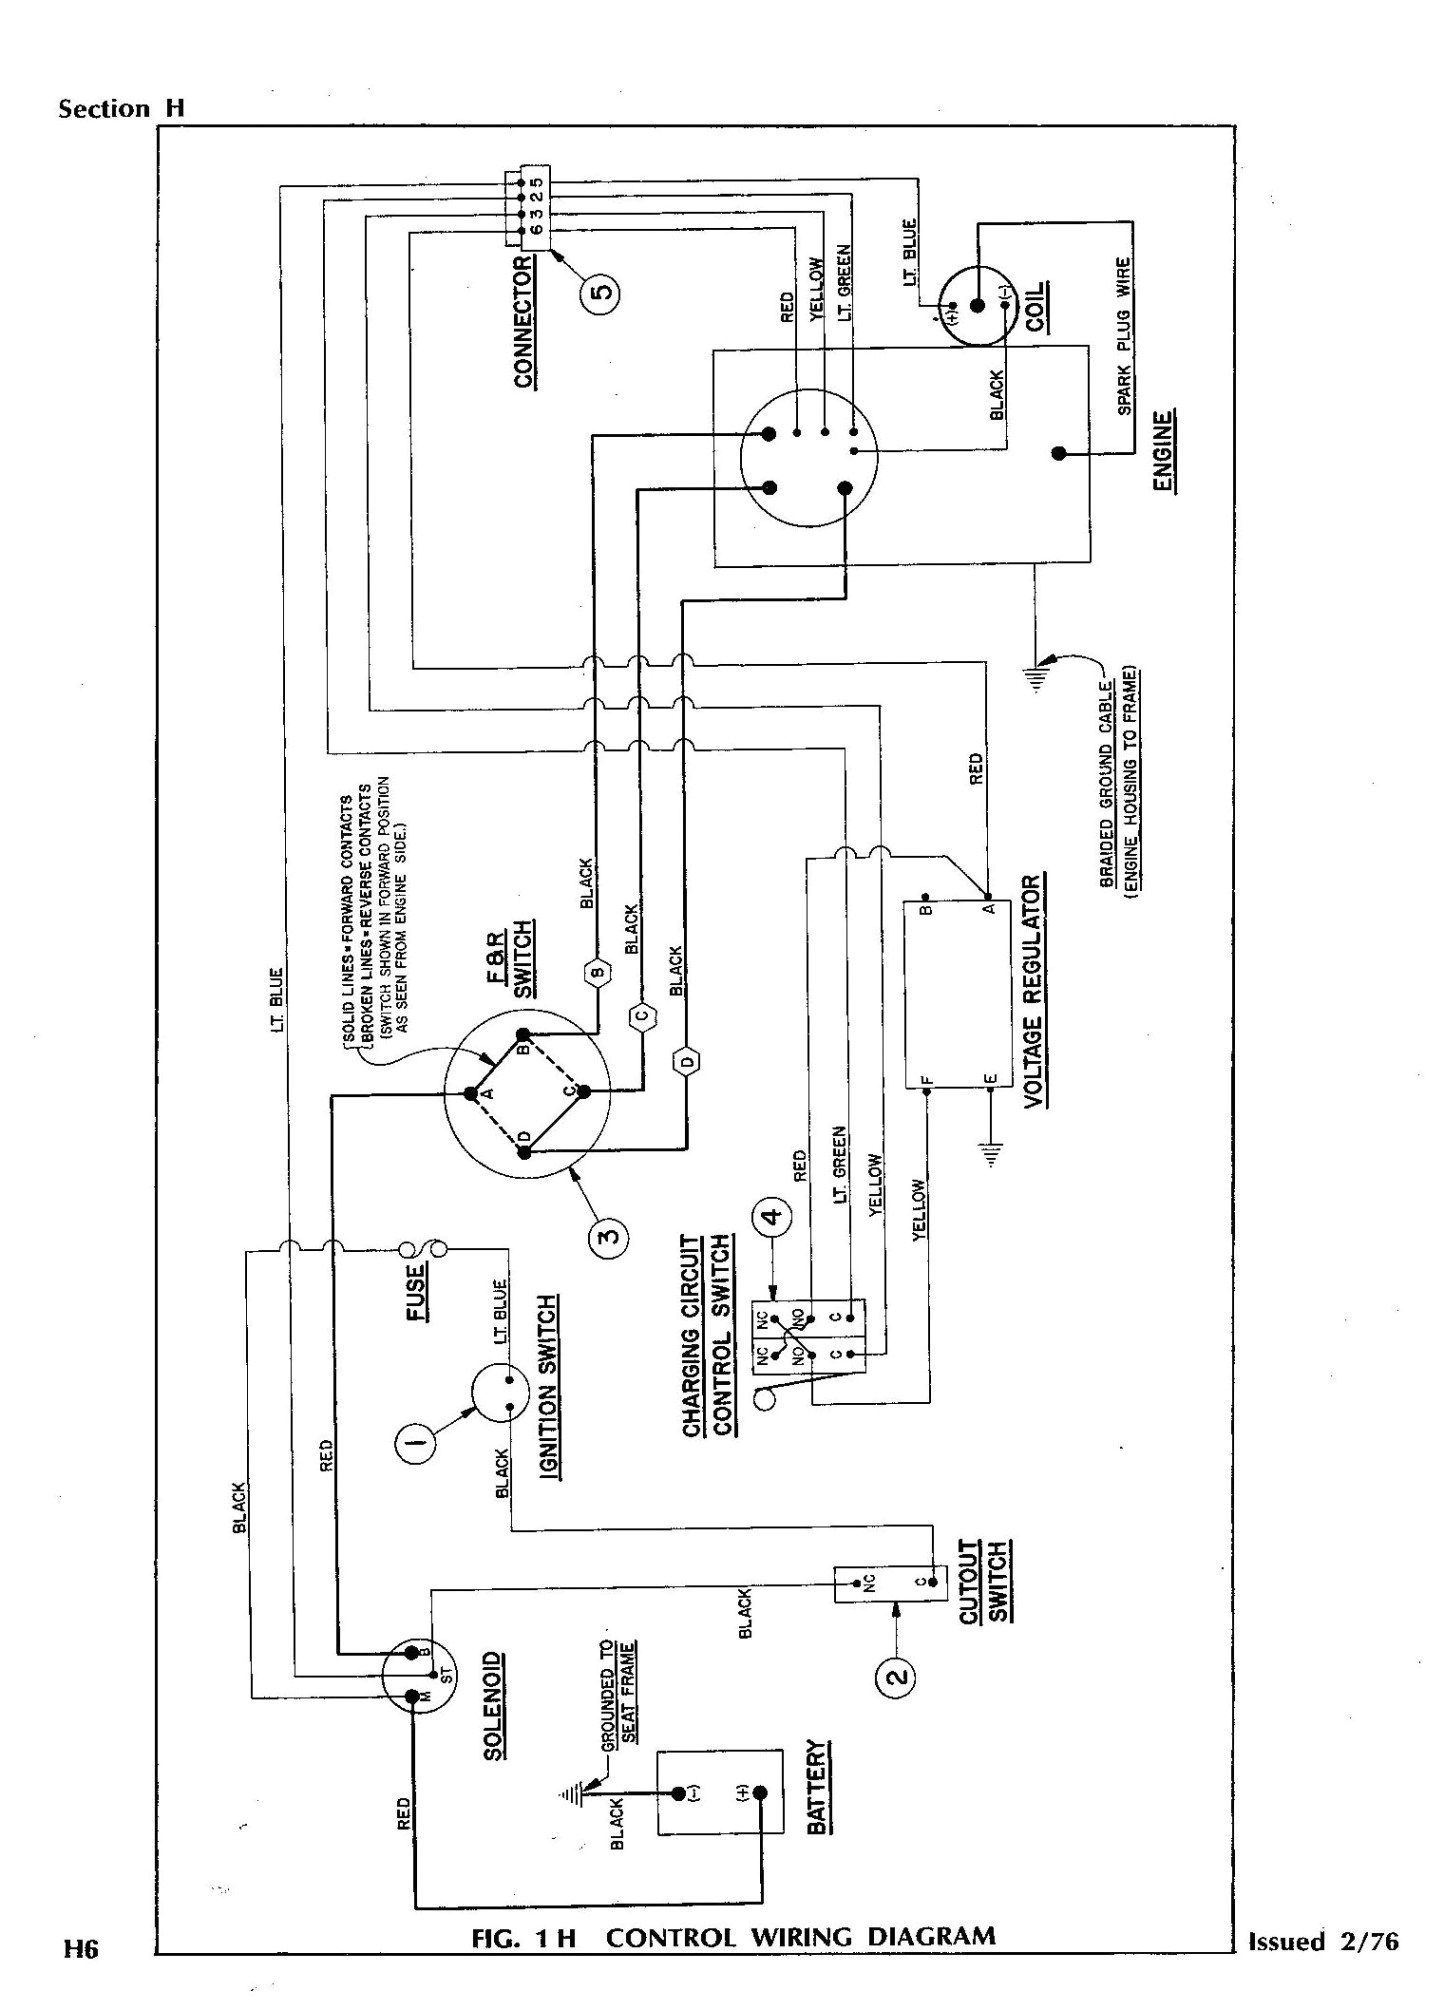 1978 ezgo wiring diagram free download schematic wiring diagrams 99 club car wiring diagram free download